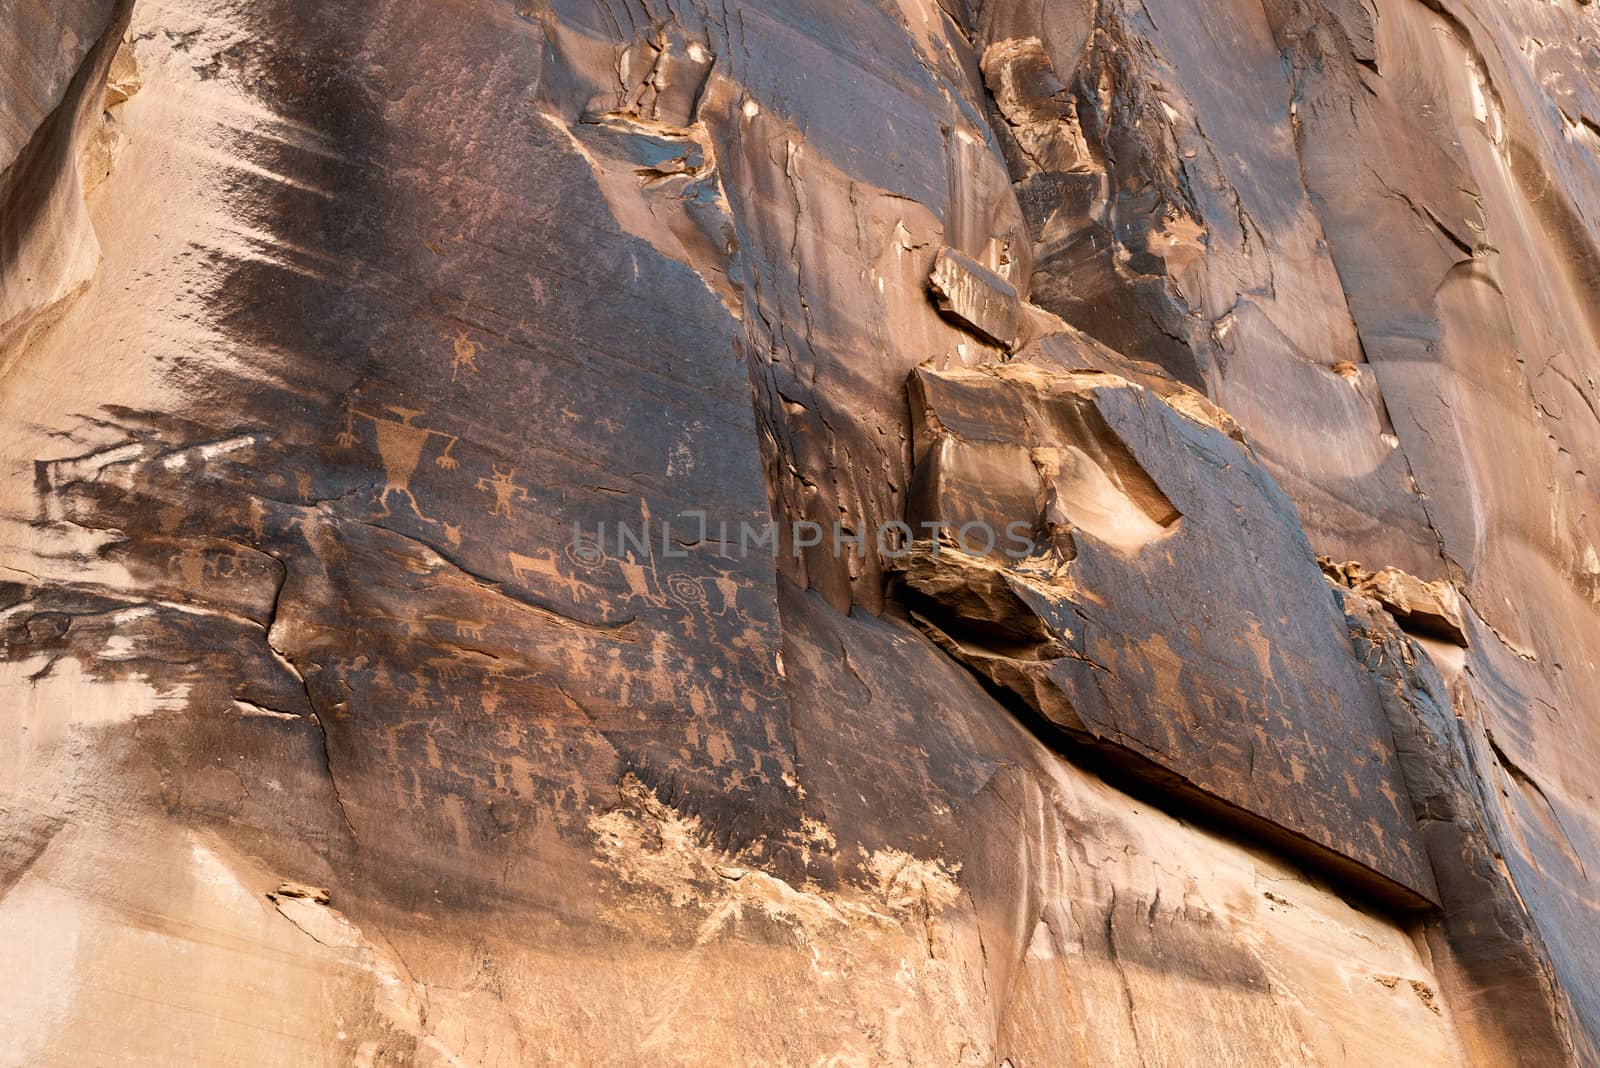 Petroglyph panel at the Utah Highway 279 Rock Art Site